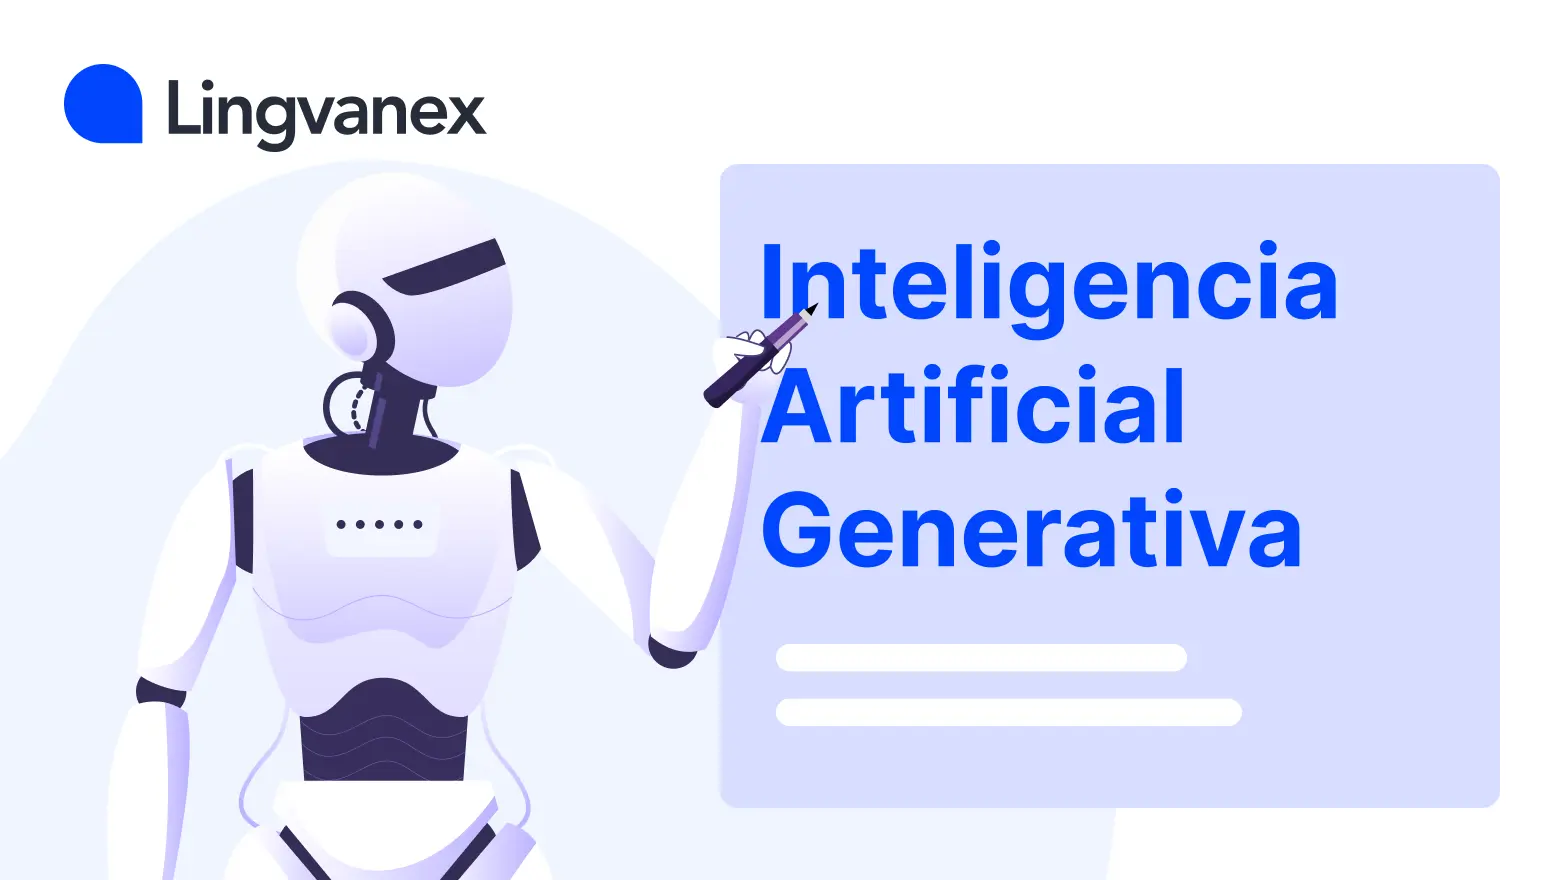 ¿Qué es la Inteligencia Artificial generativa?